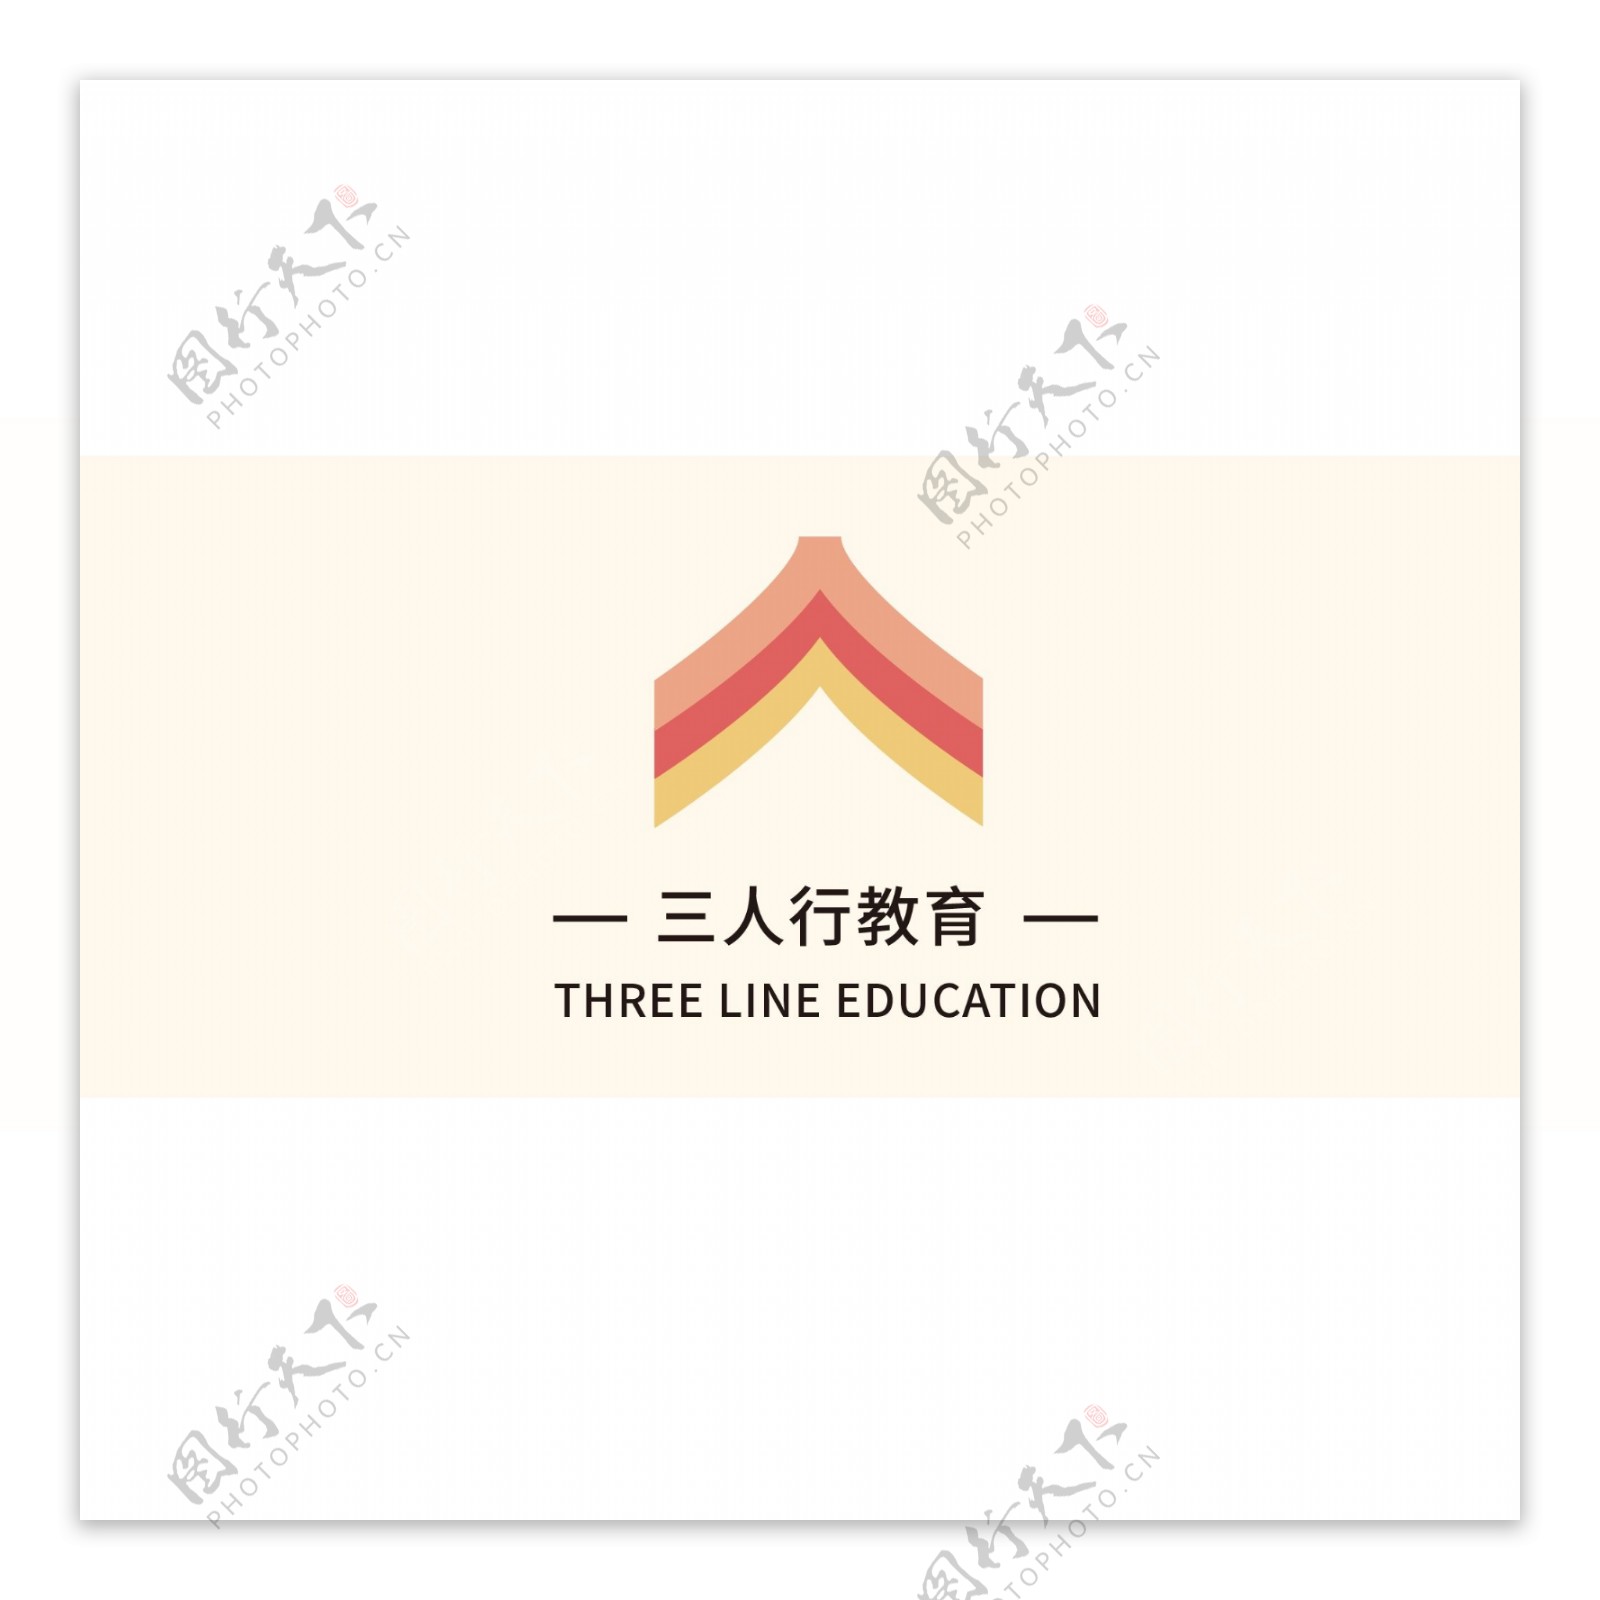 三人行教育机构标志设计